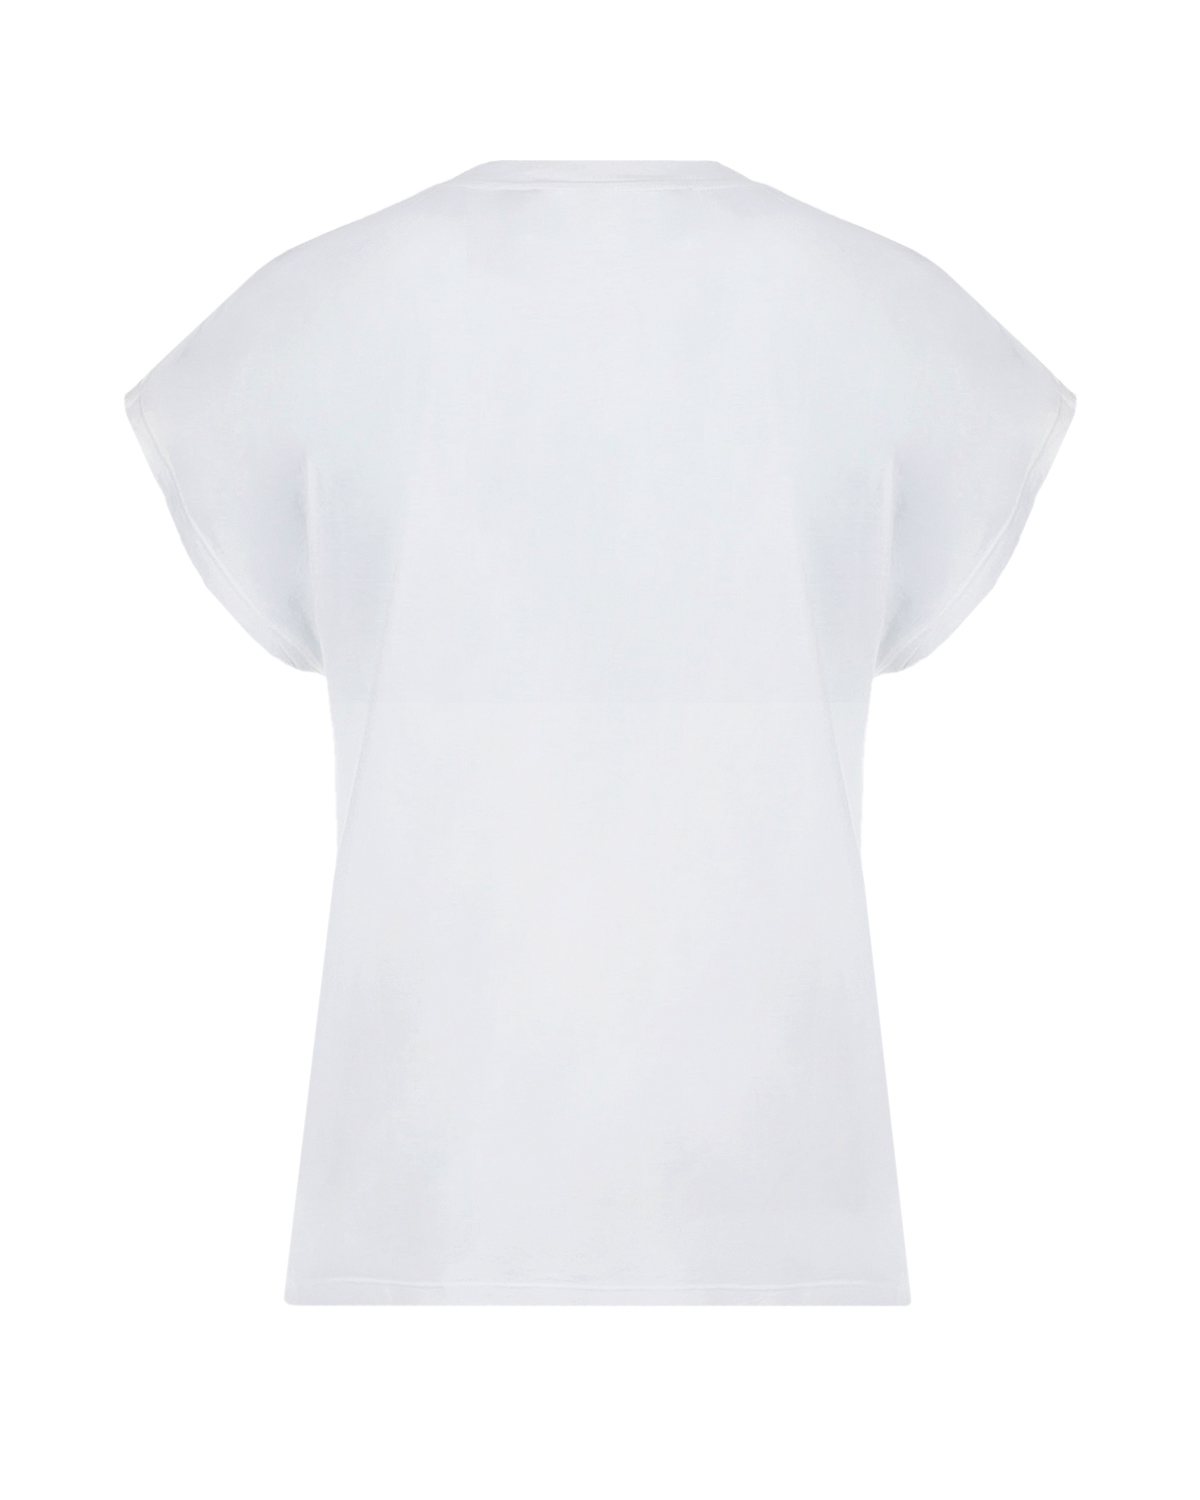 Белая футболка с контрастным принтом IRO, размер 40, цвет белый - фото 6